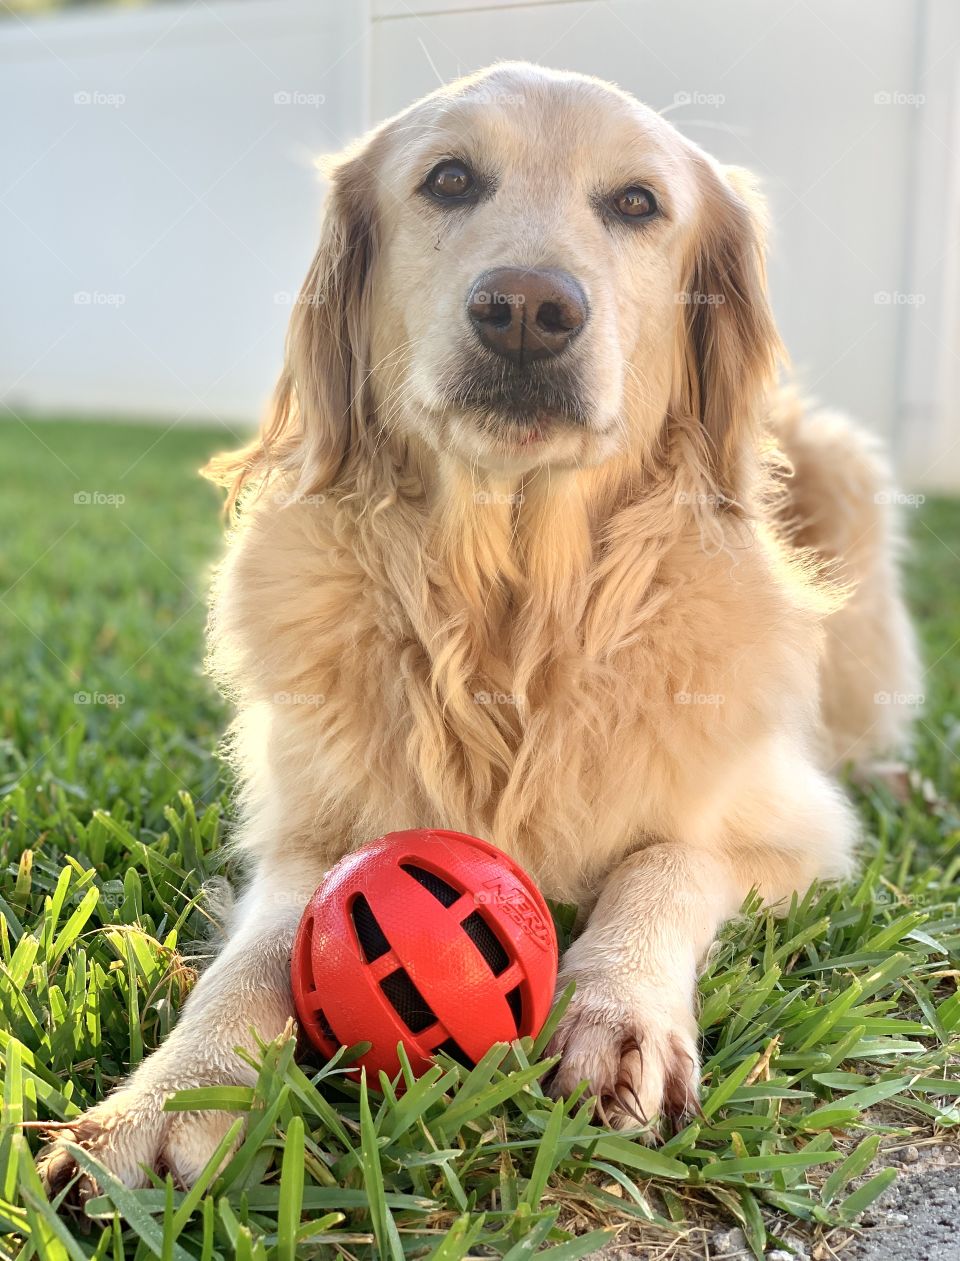 Golden retriever and red ball backyard